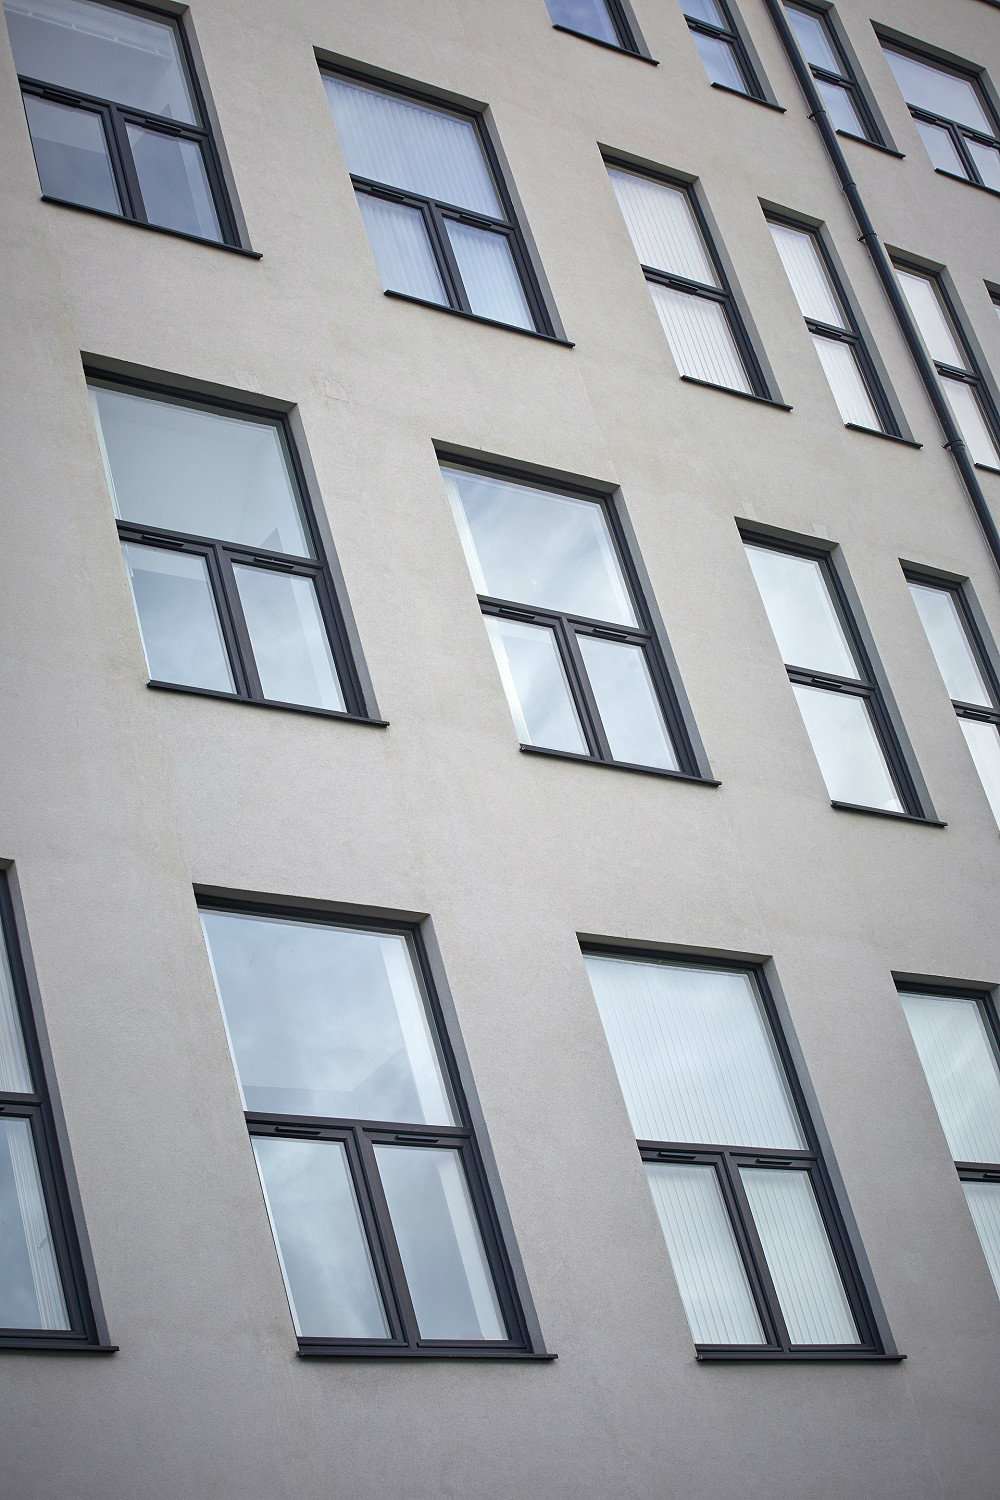 Aluminium windows on apartment block